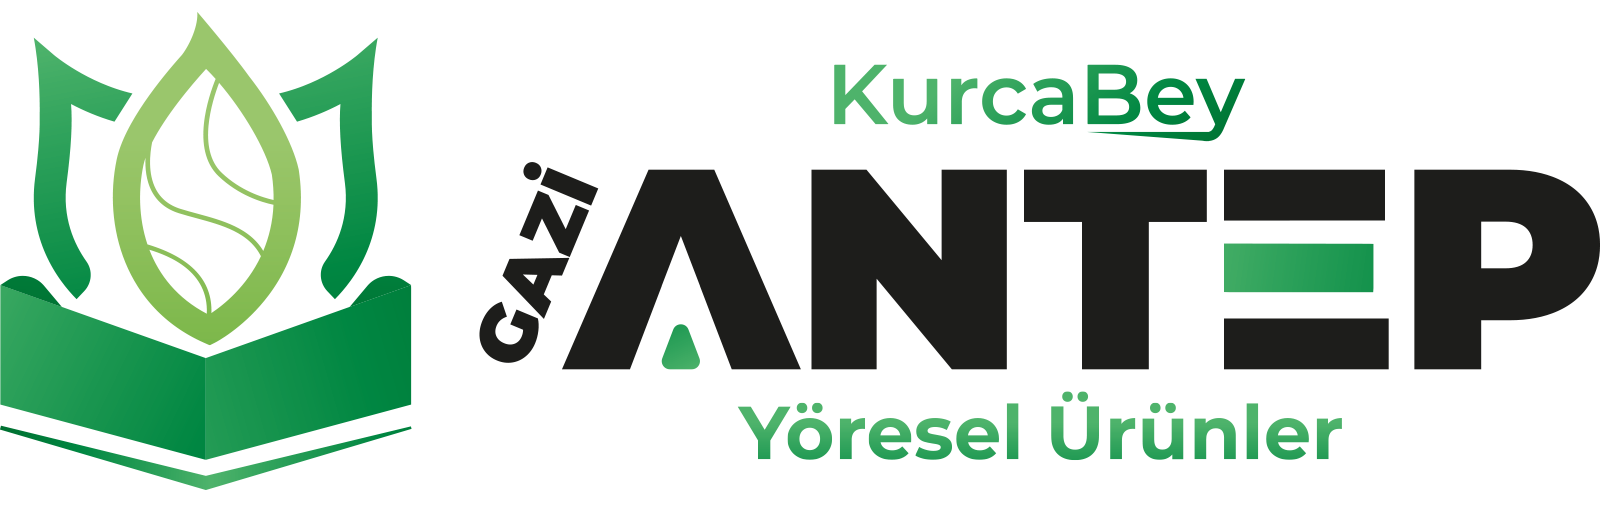 logo-kurcabey